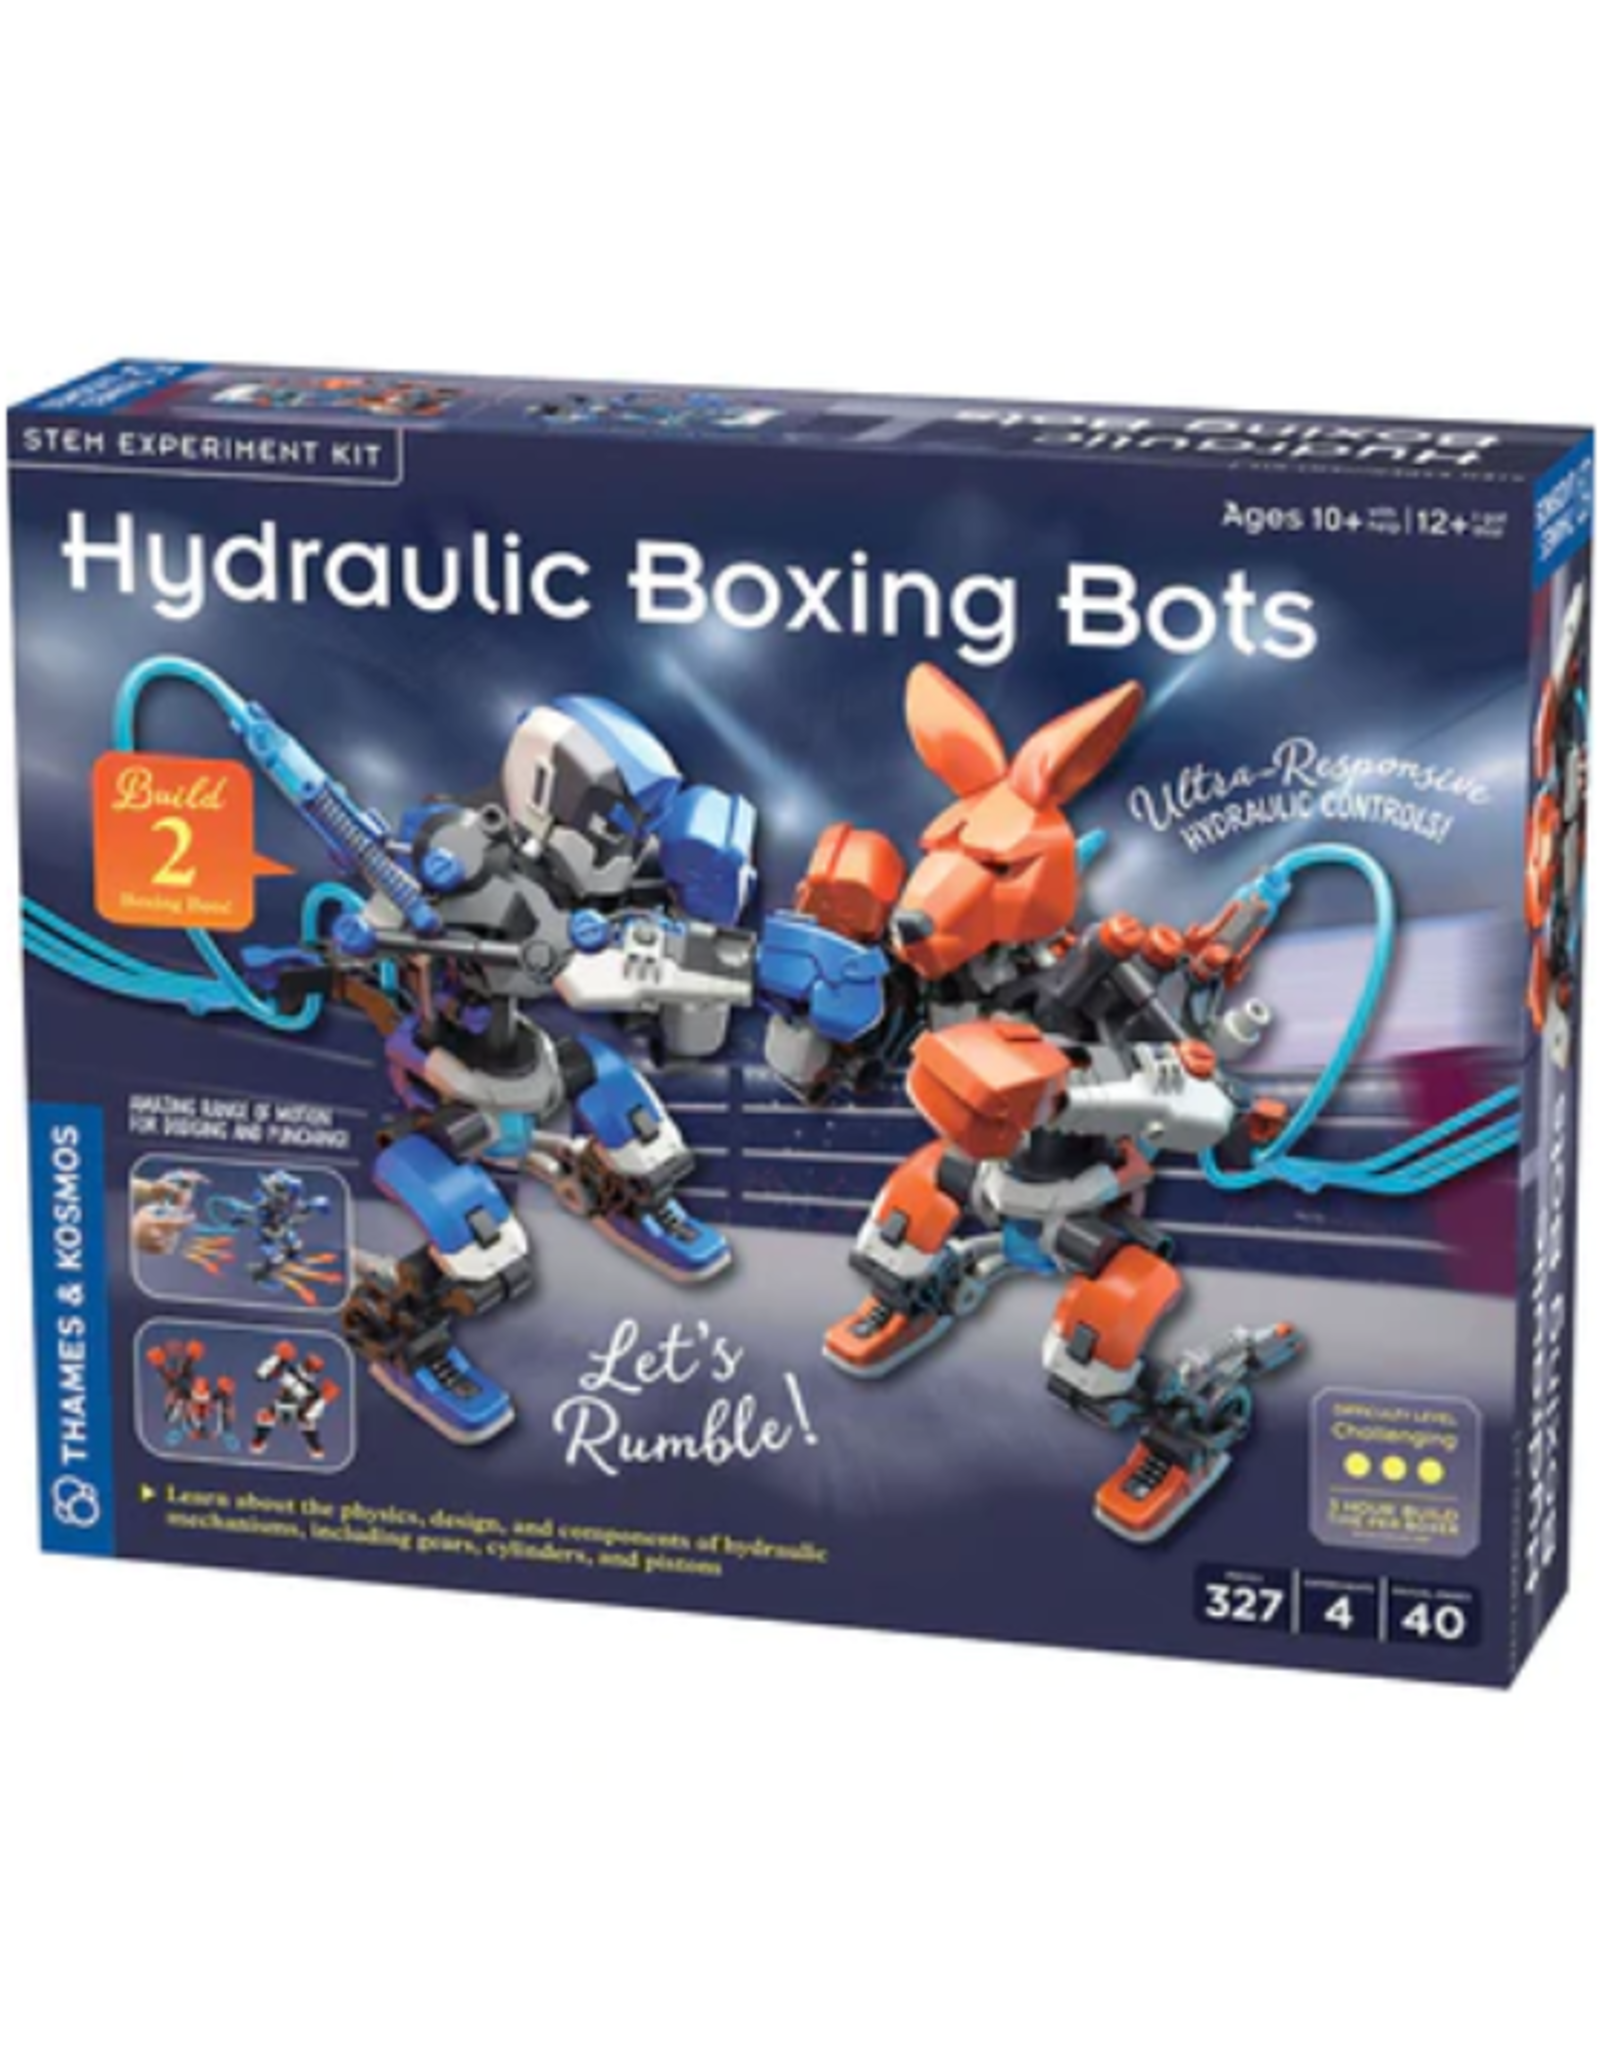 Thames & Kosmos Thames & Kosmos - Hydraulic Boxing Bots